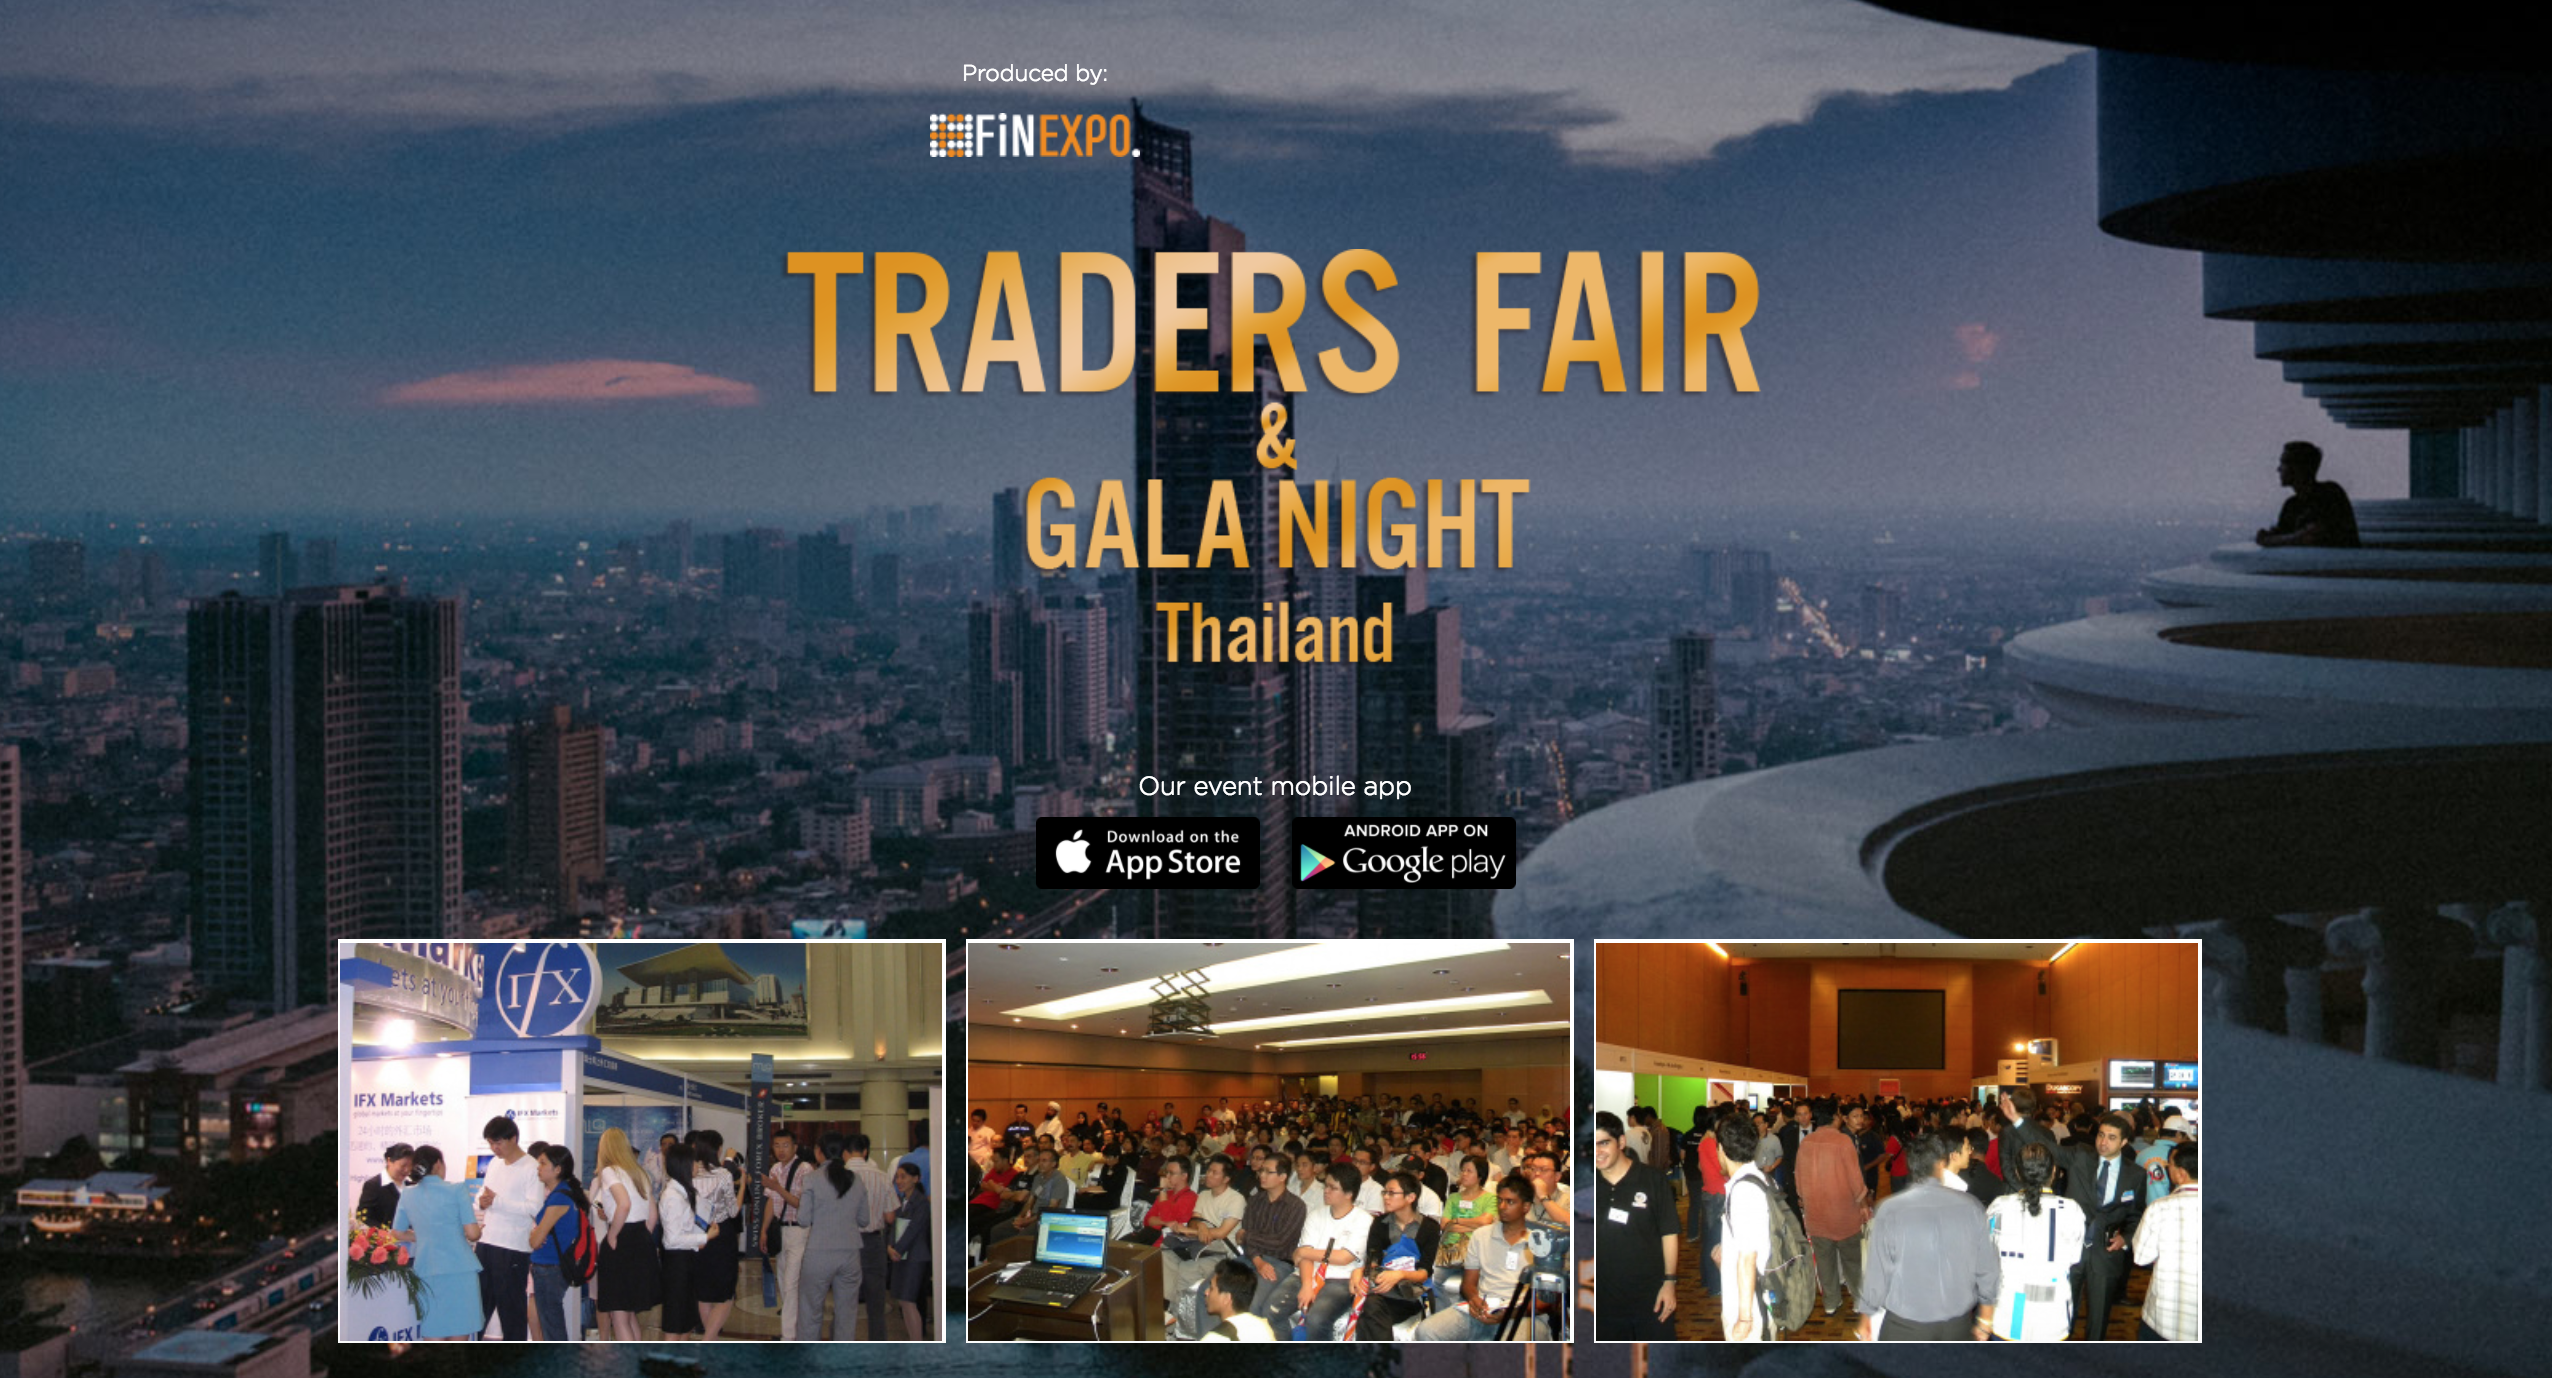 Traders Fair 2018 - Thailand (Financial Event)